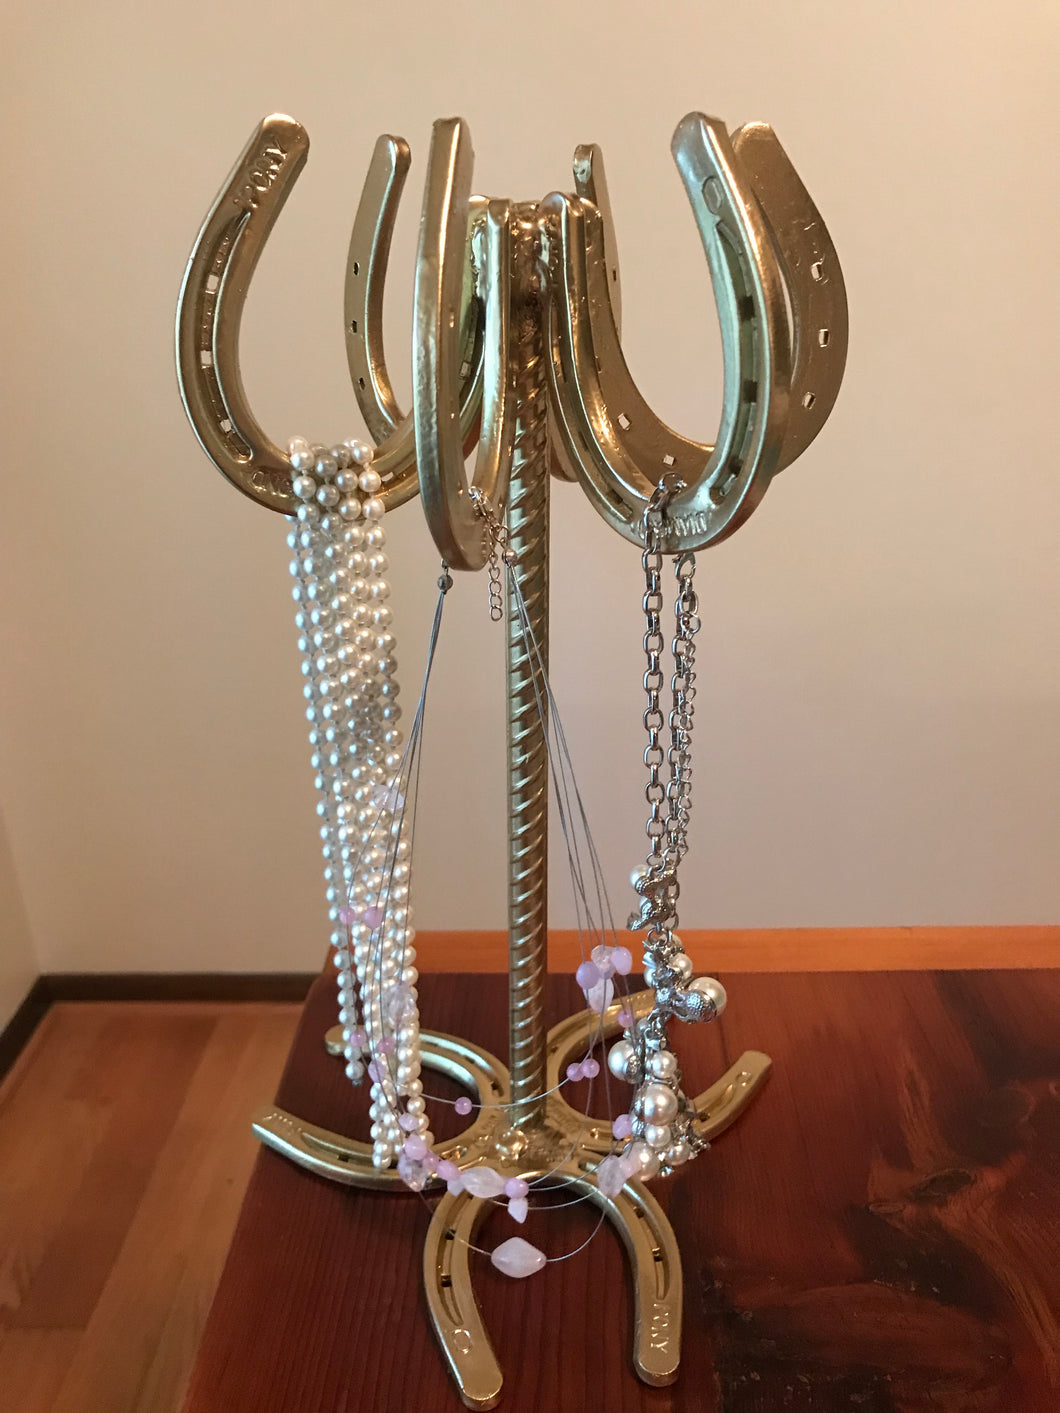 Horseshoe necklace holder